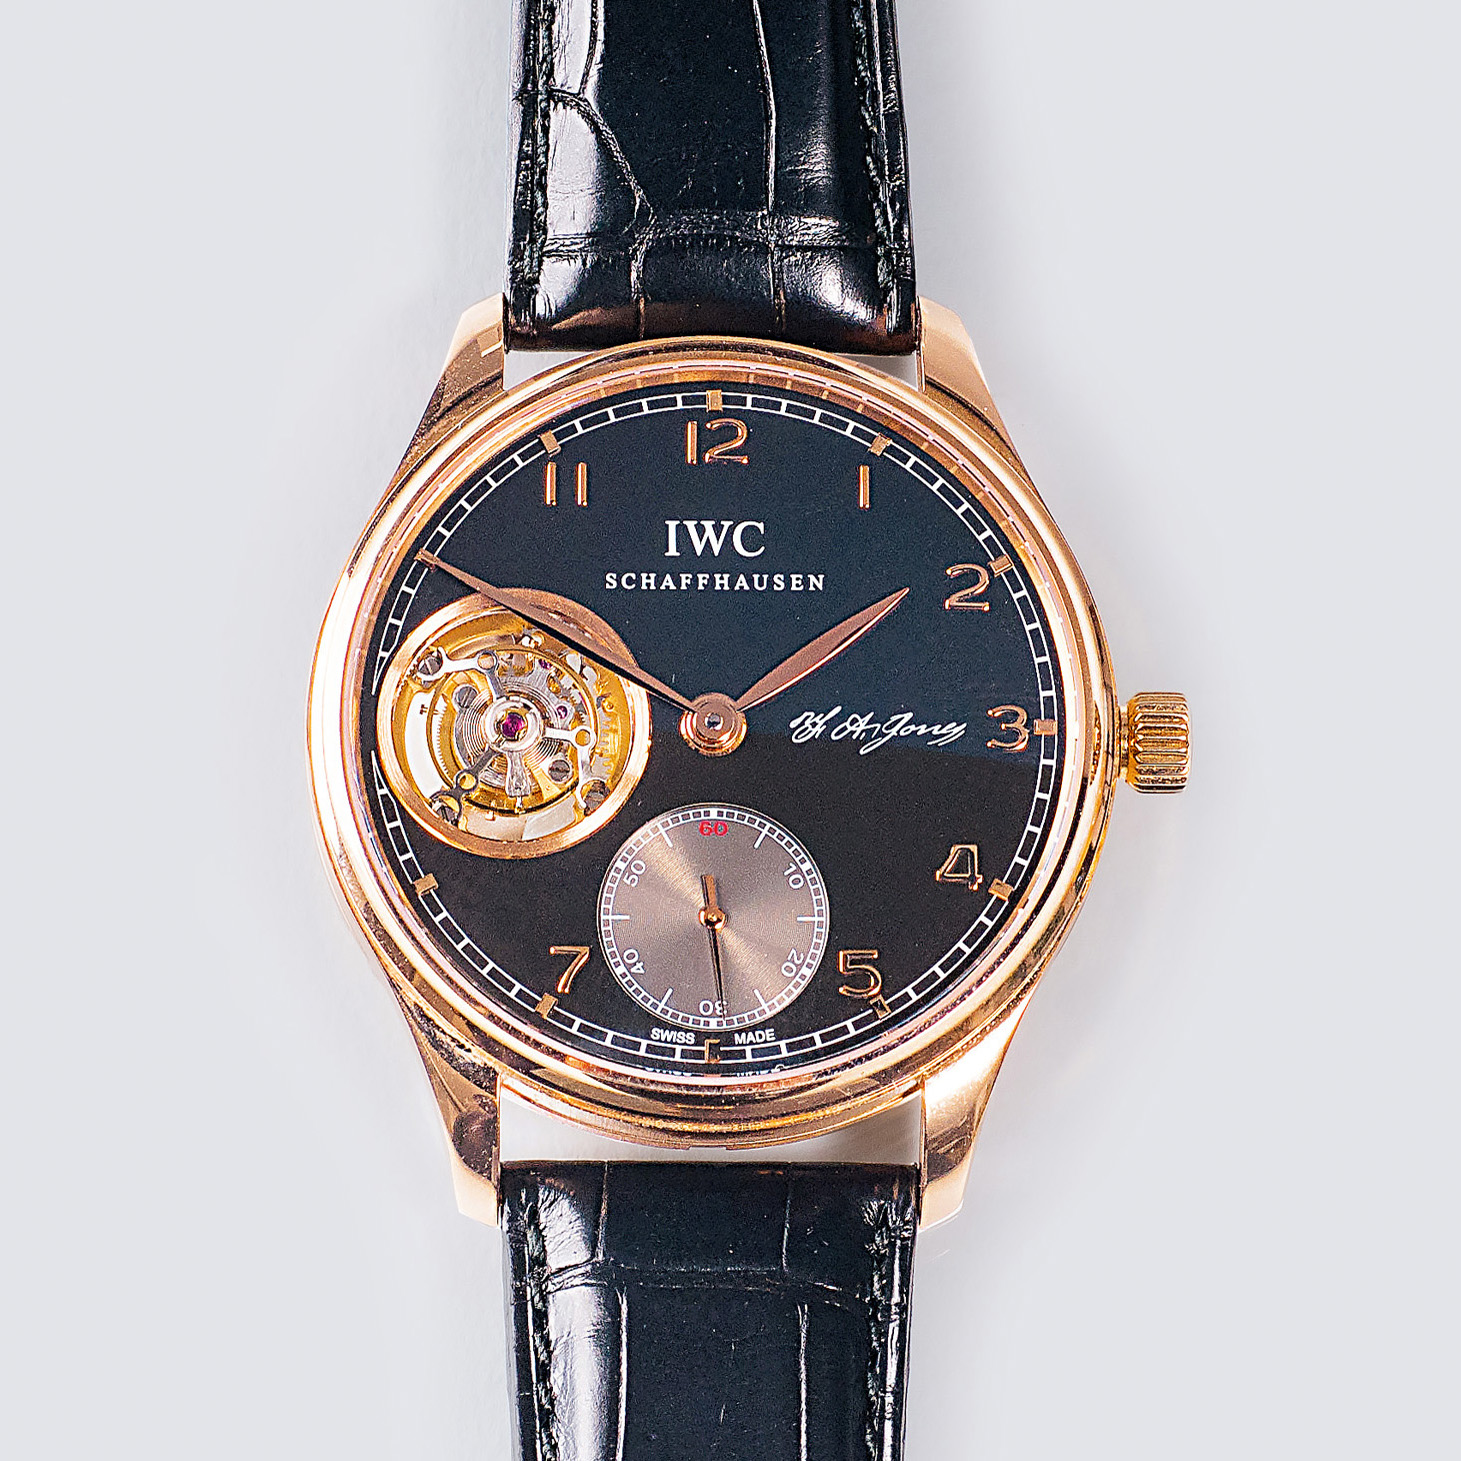 A Limited Gentlemen's Wristwatch 'Portuguese Tourbillon' - image 2